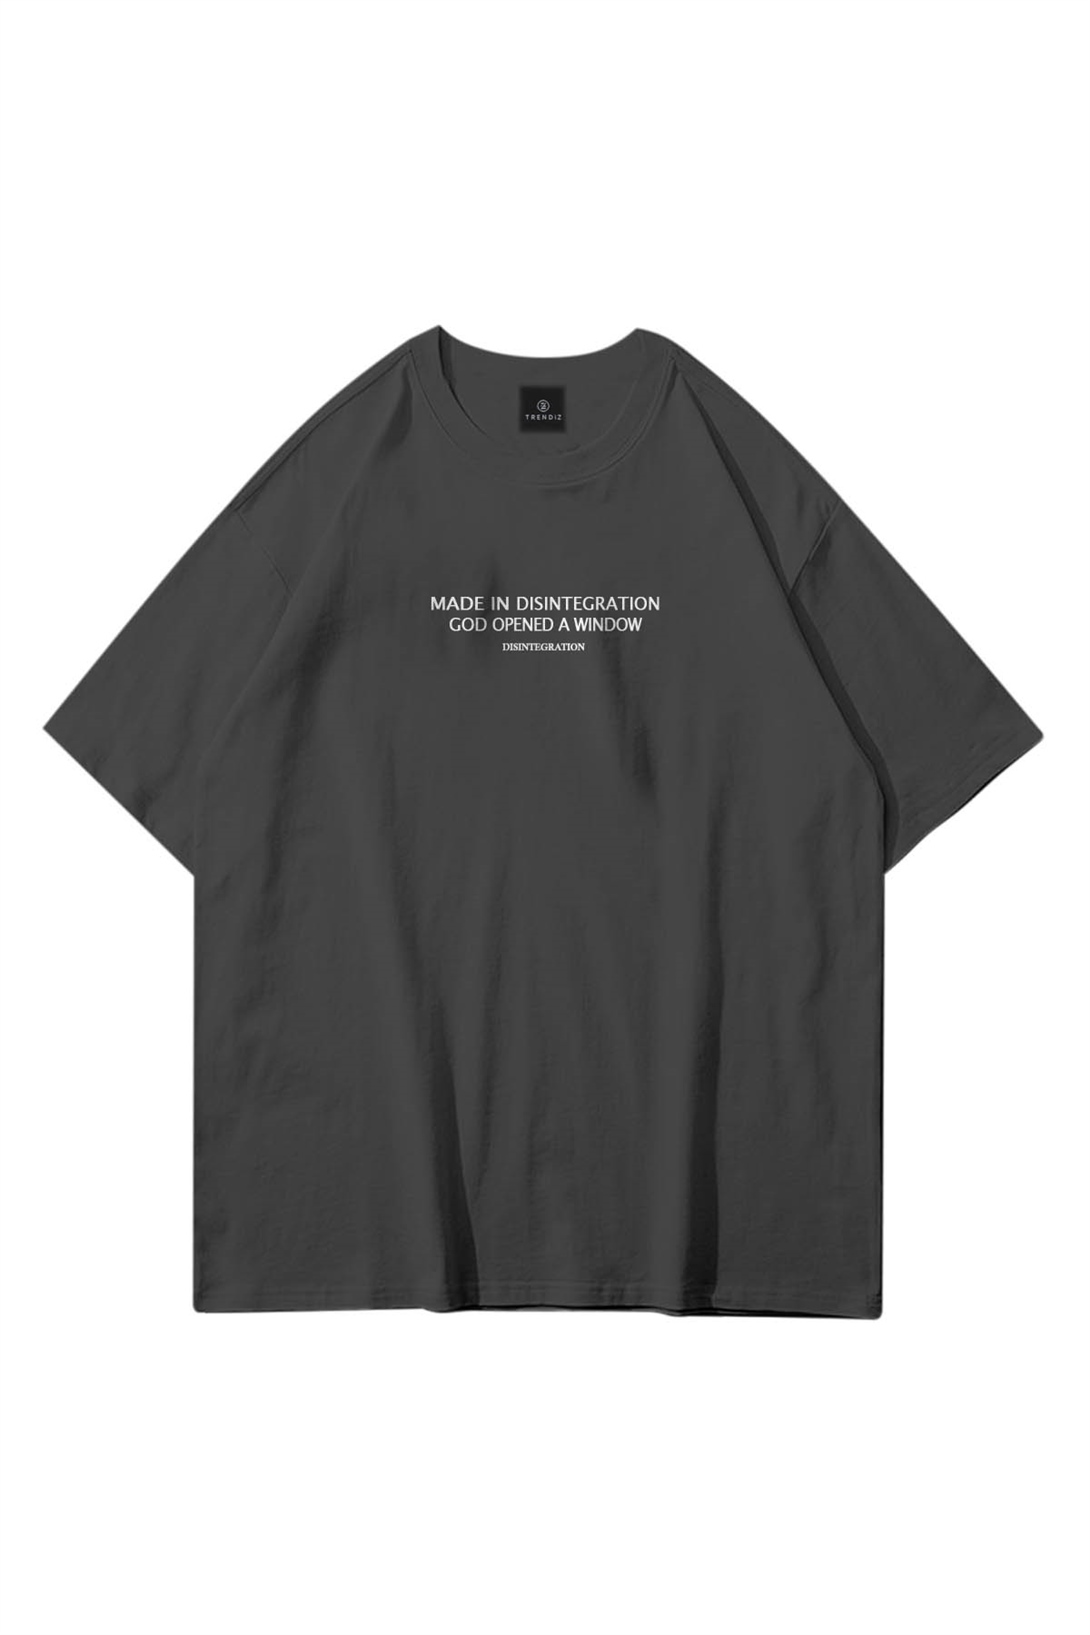 Trendiz Unisex Made in Disintegration Antrasit Tshirt